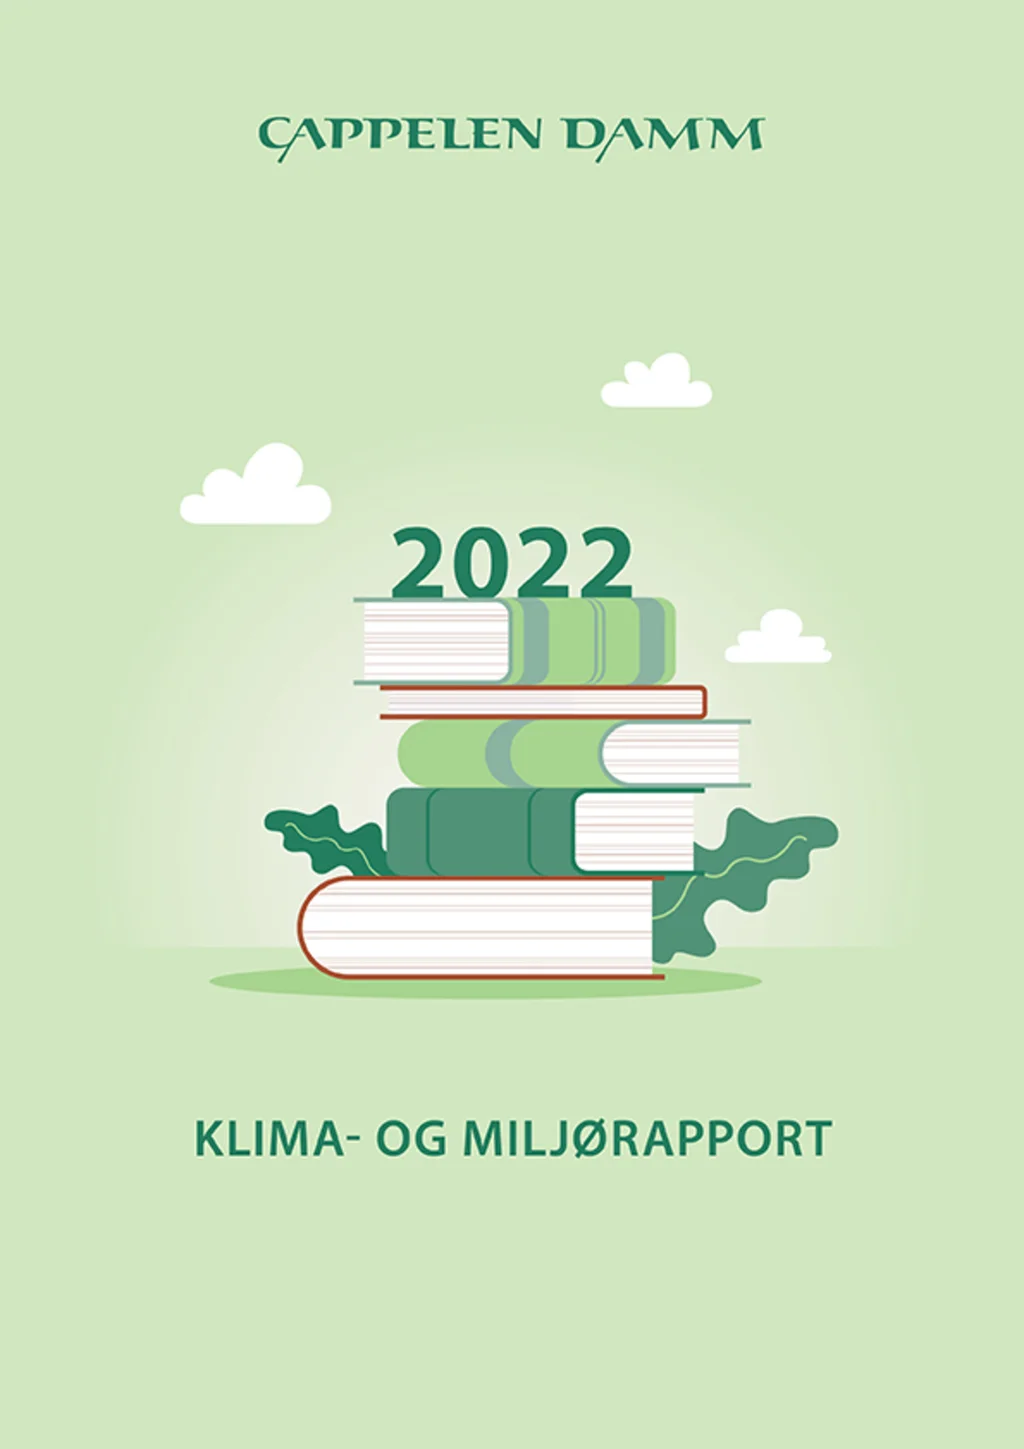 Klima- og miljørapport for Cappelen Damm 2022